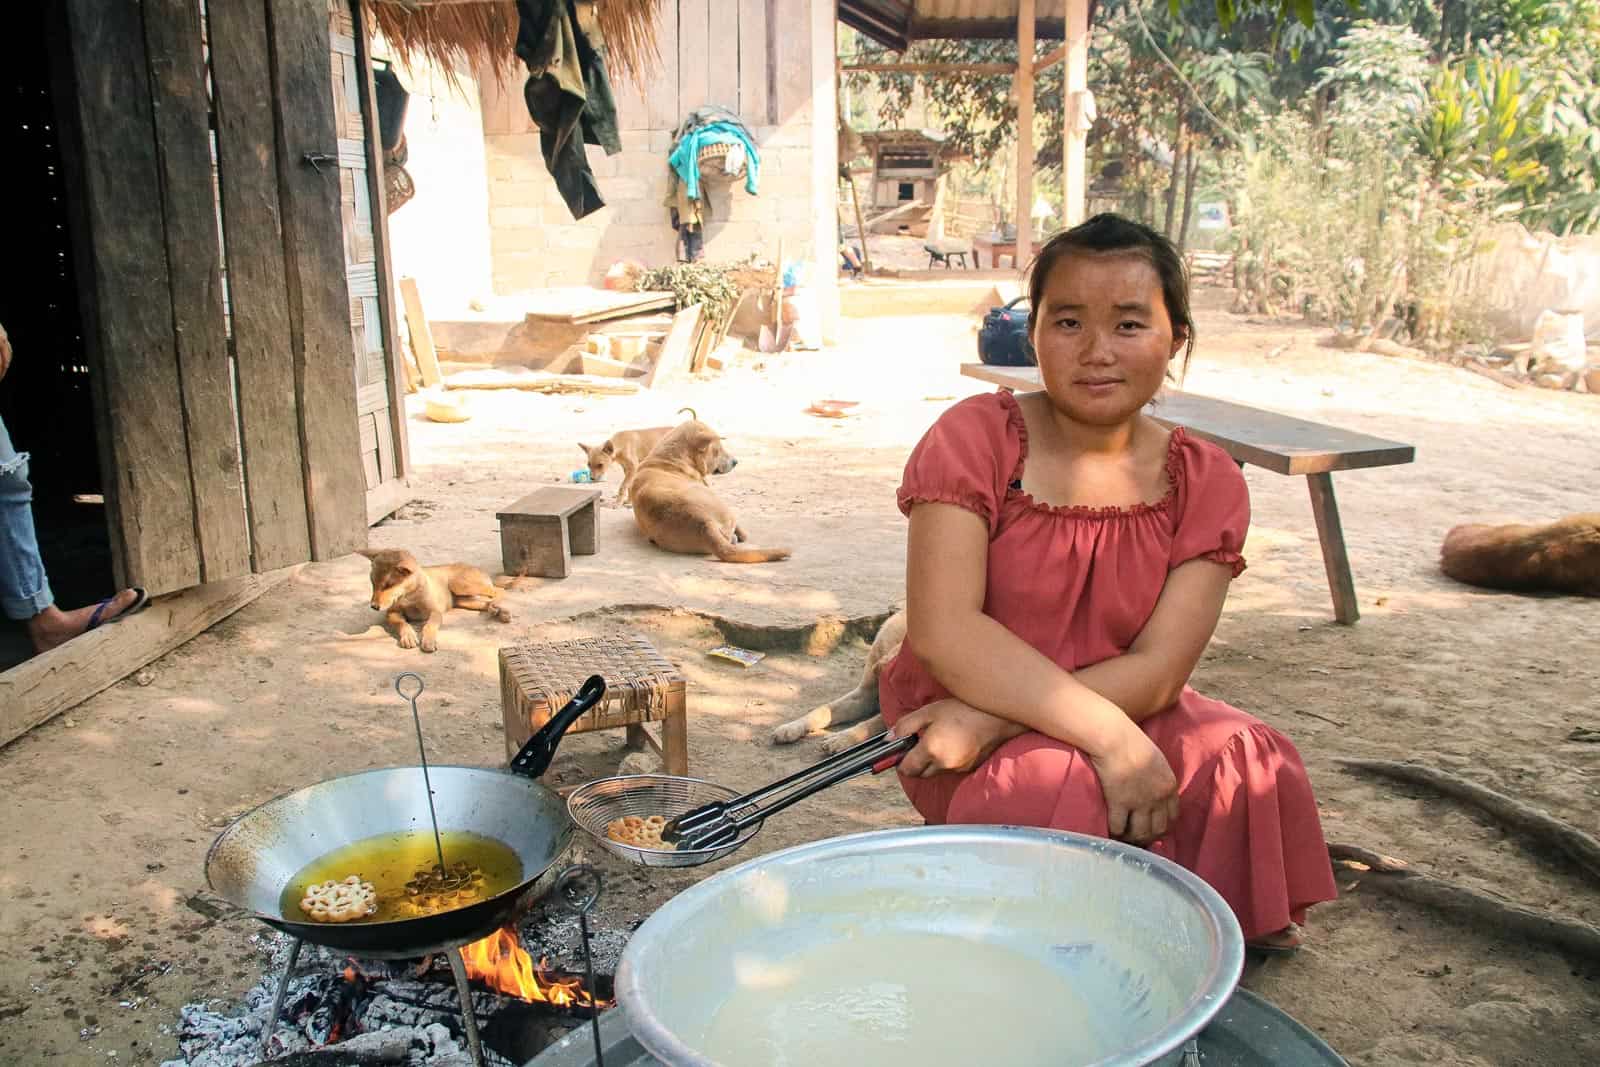 Pour en finir avec les mariages précoces, l’éducation permet l’autonomisation des filles et des femmes au Laos